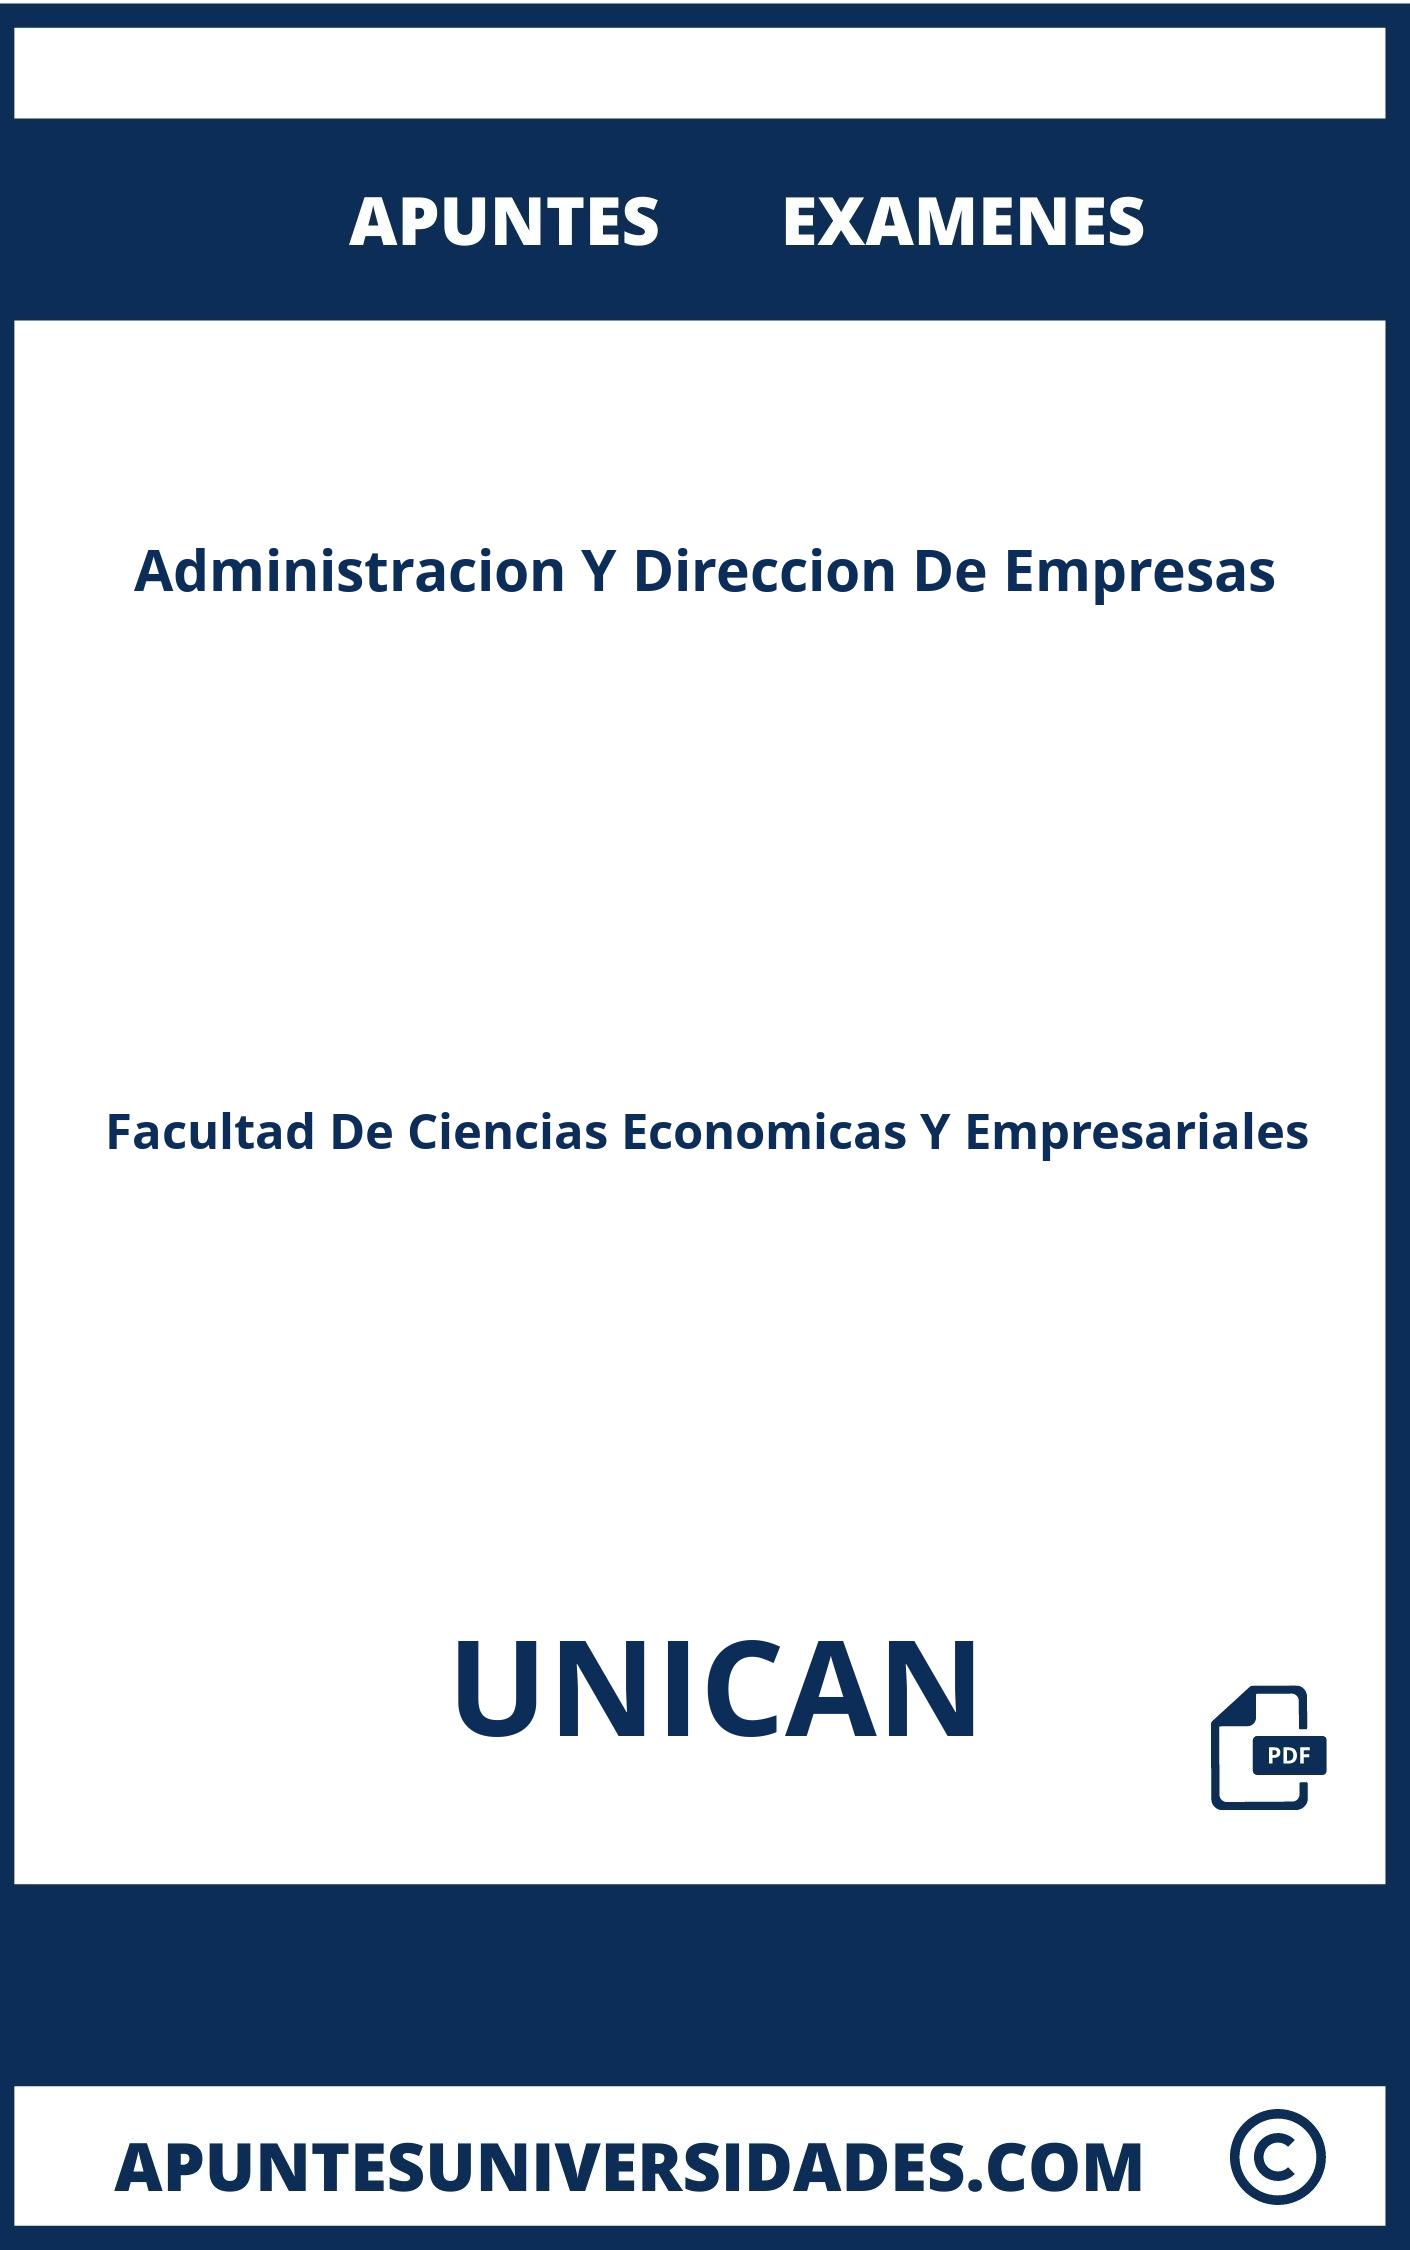 Apuntes Examenes Administracion Y Direccion De Empresas UNICAN